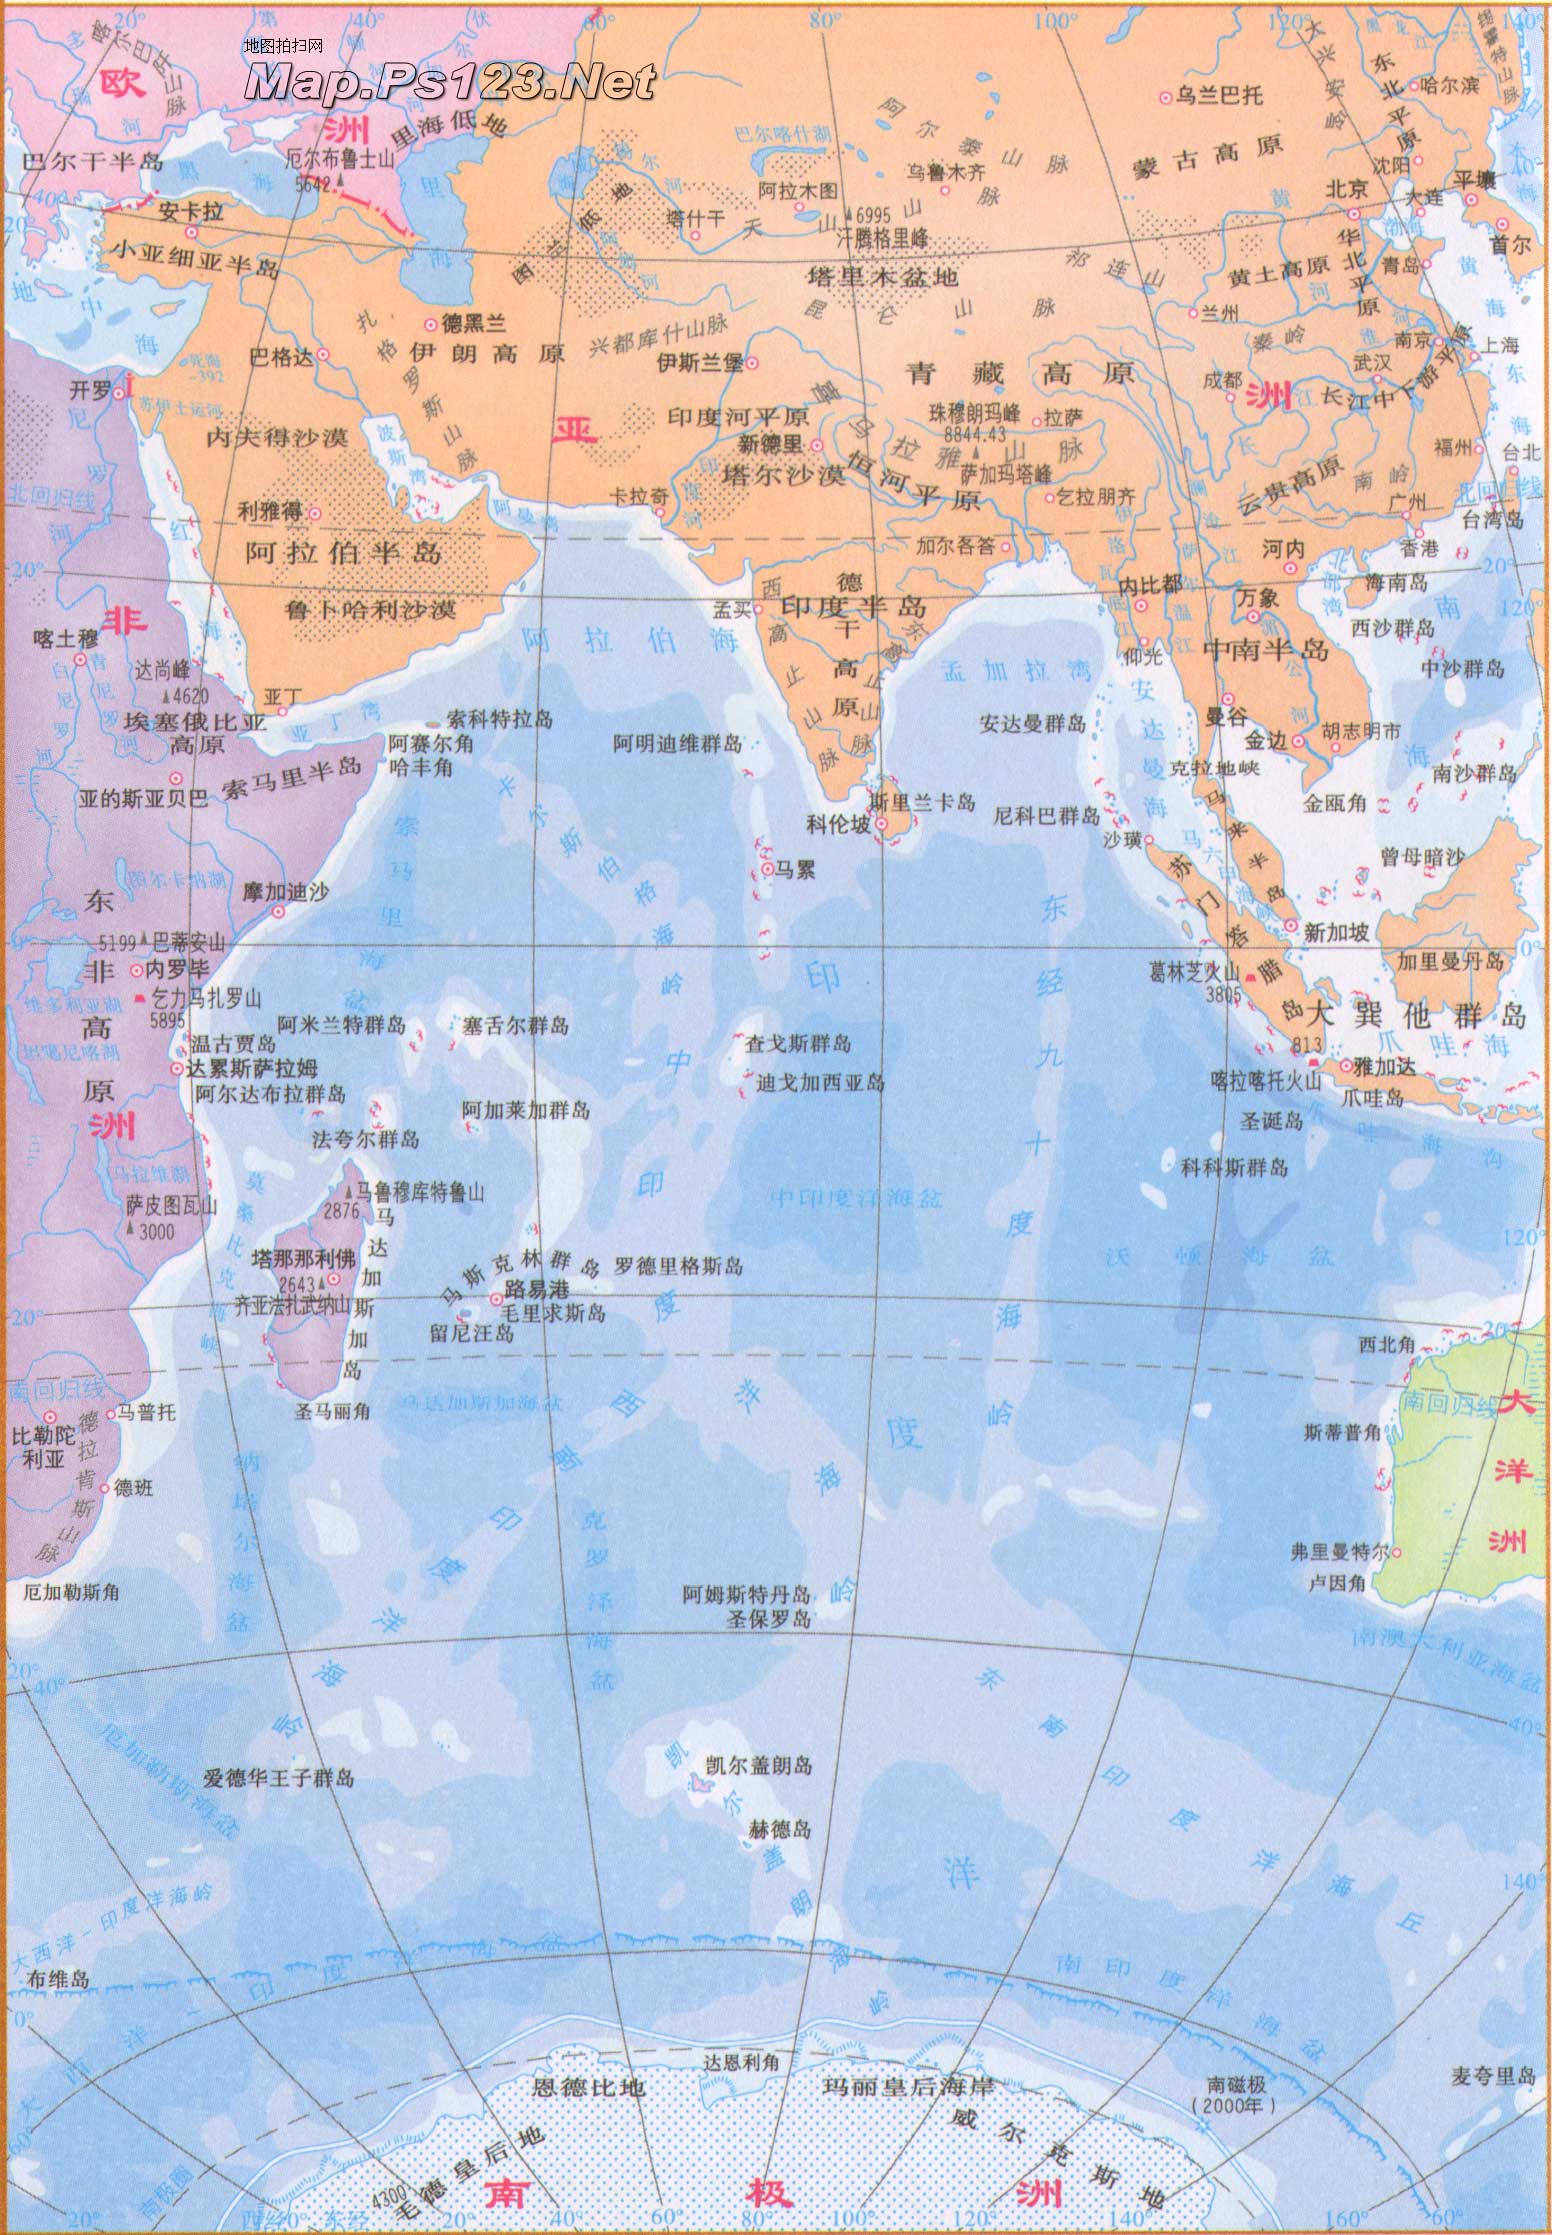 几大洲几大洋,几大洲几大洋是指哪些